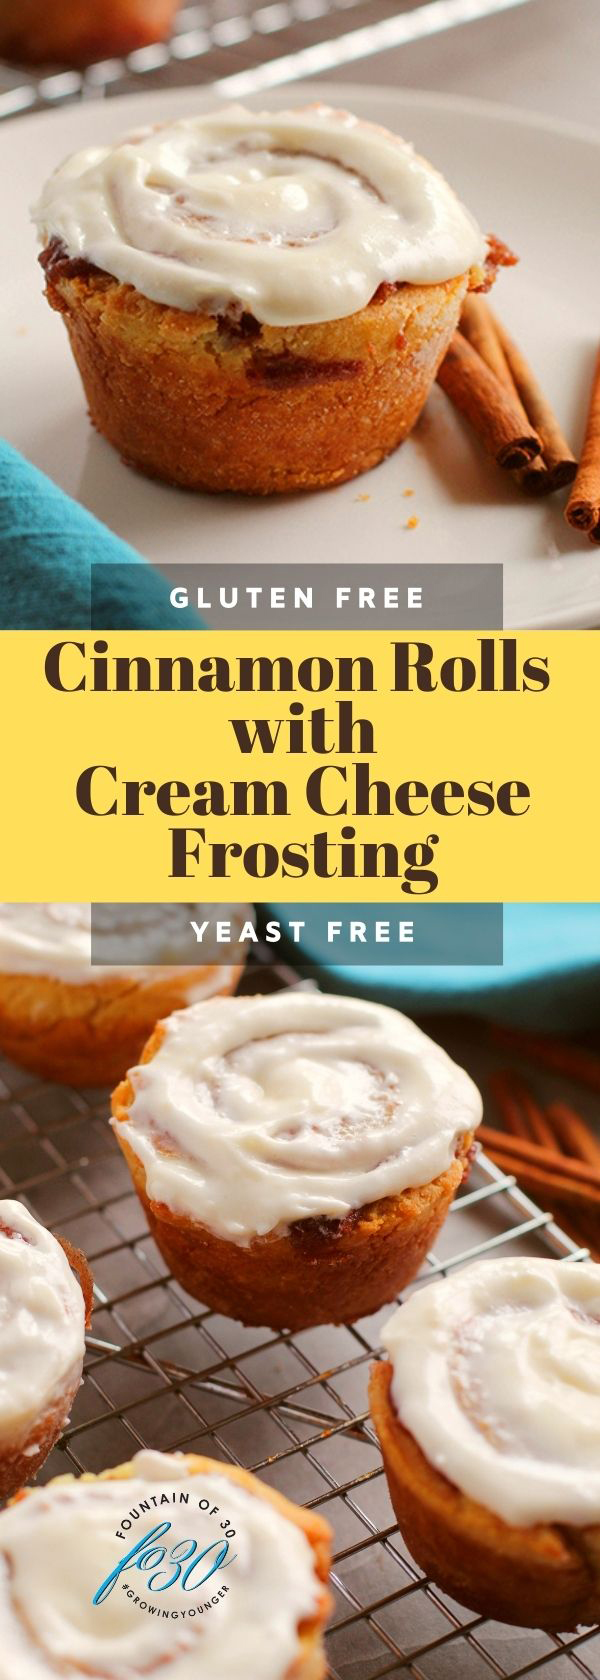 cinnamon rolls cream cheese frosting fountainof30